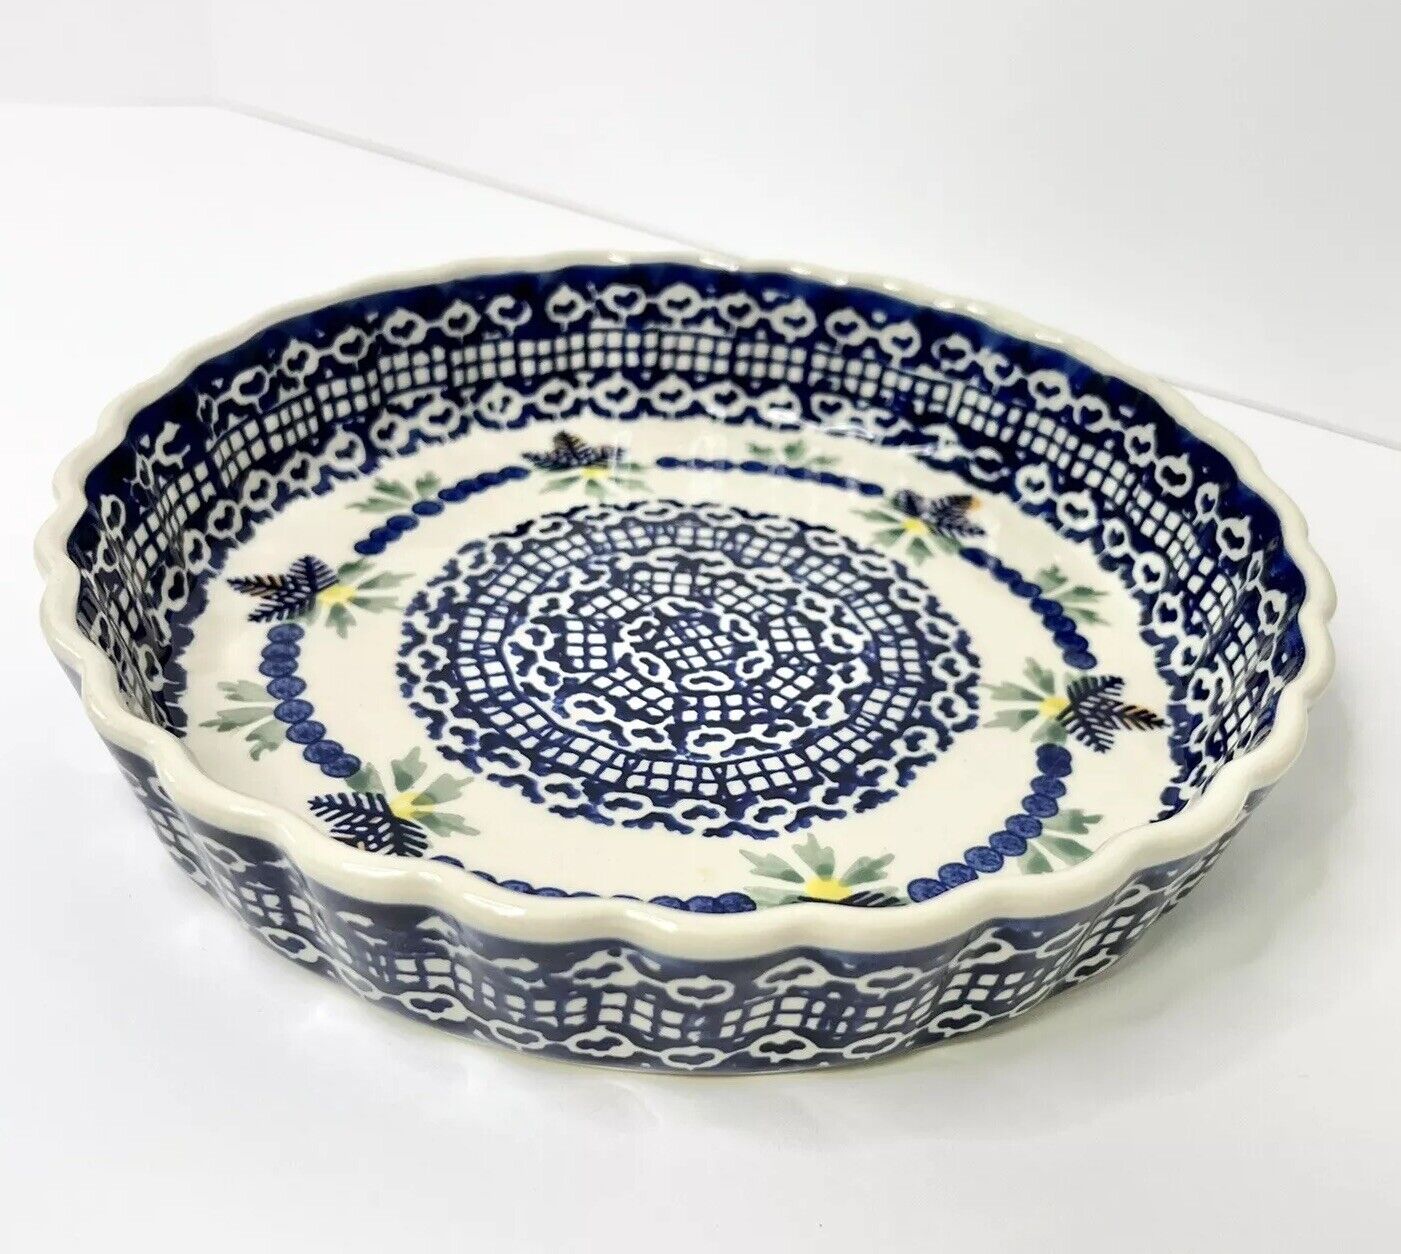 Polish Pottery BOLESLAWIEC Pie / Quiche Plate Dish Blue White Dot Floral 9.25”D